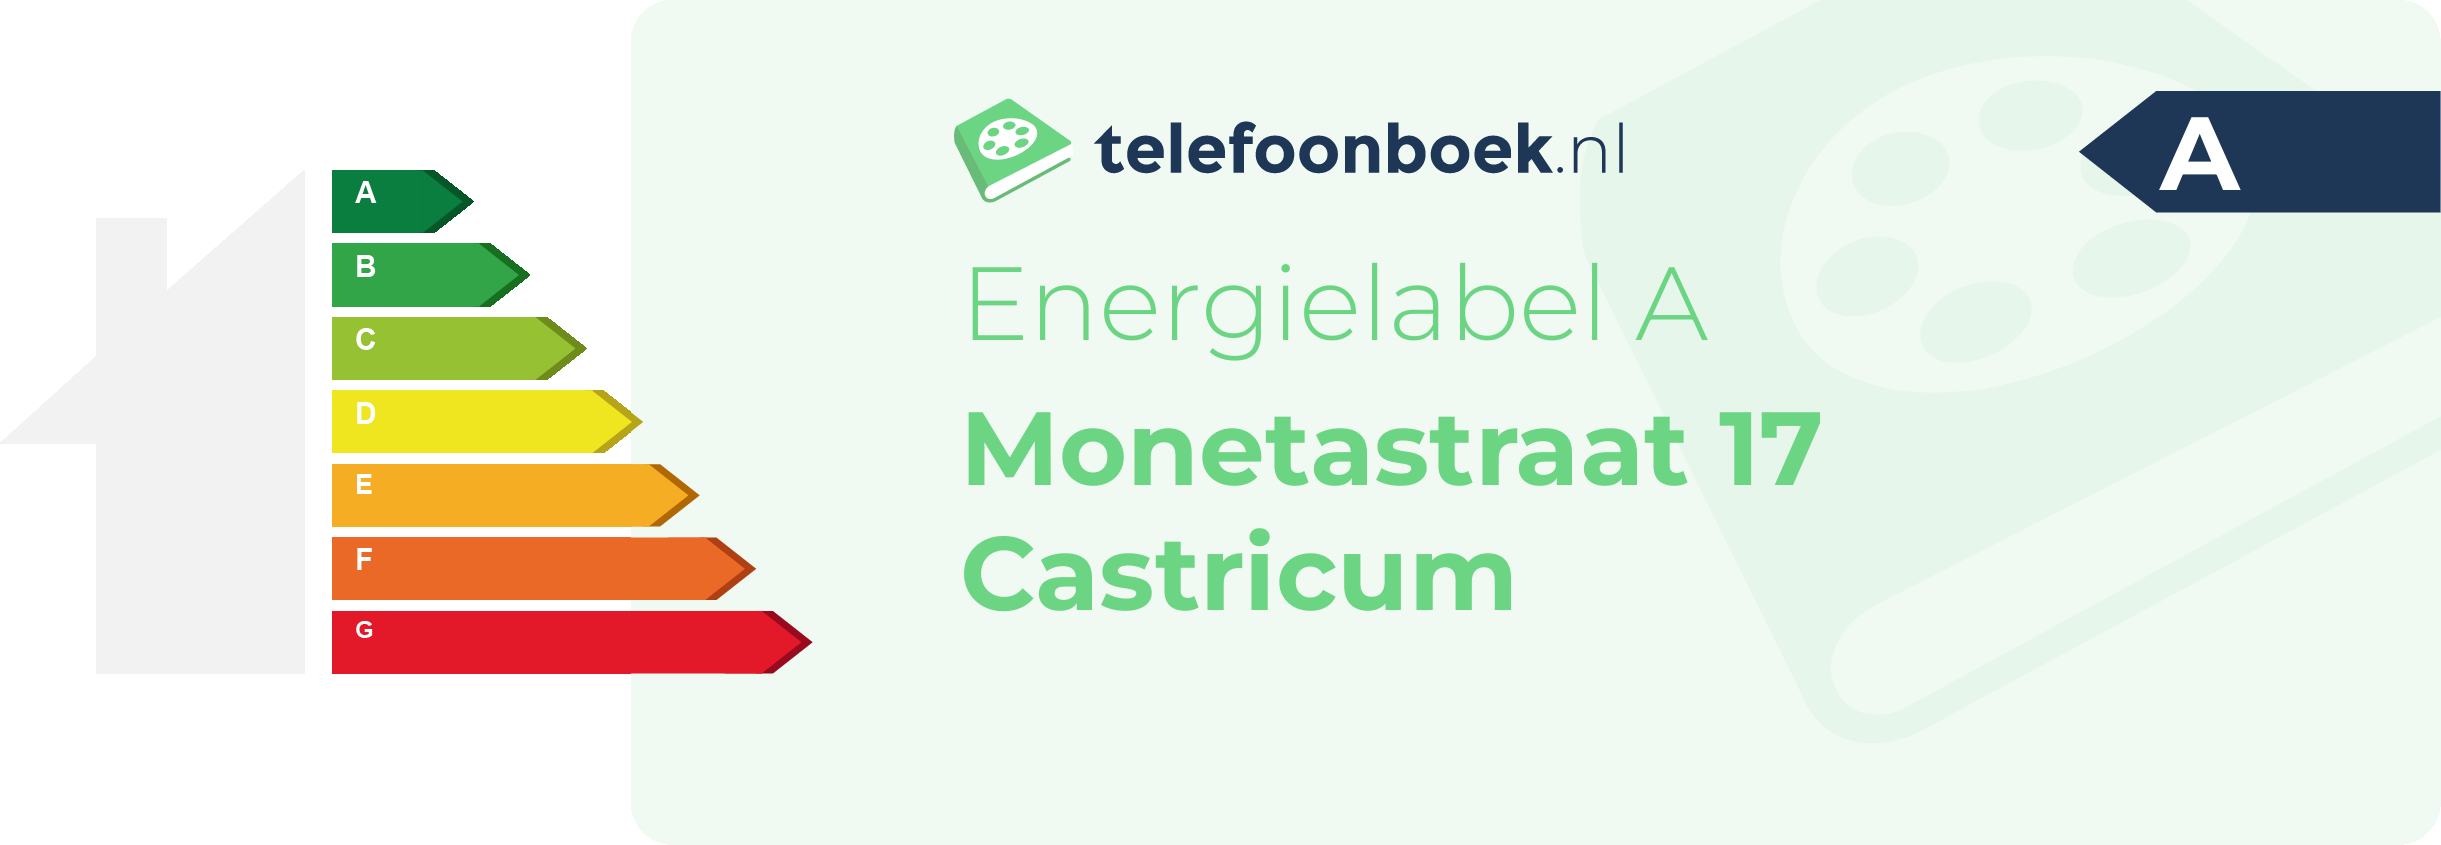 Energielabel Monetastraat 17 Castricum